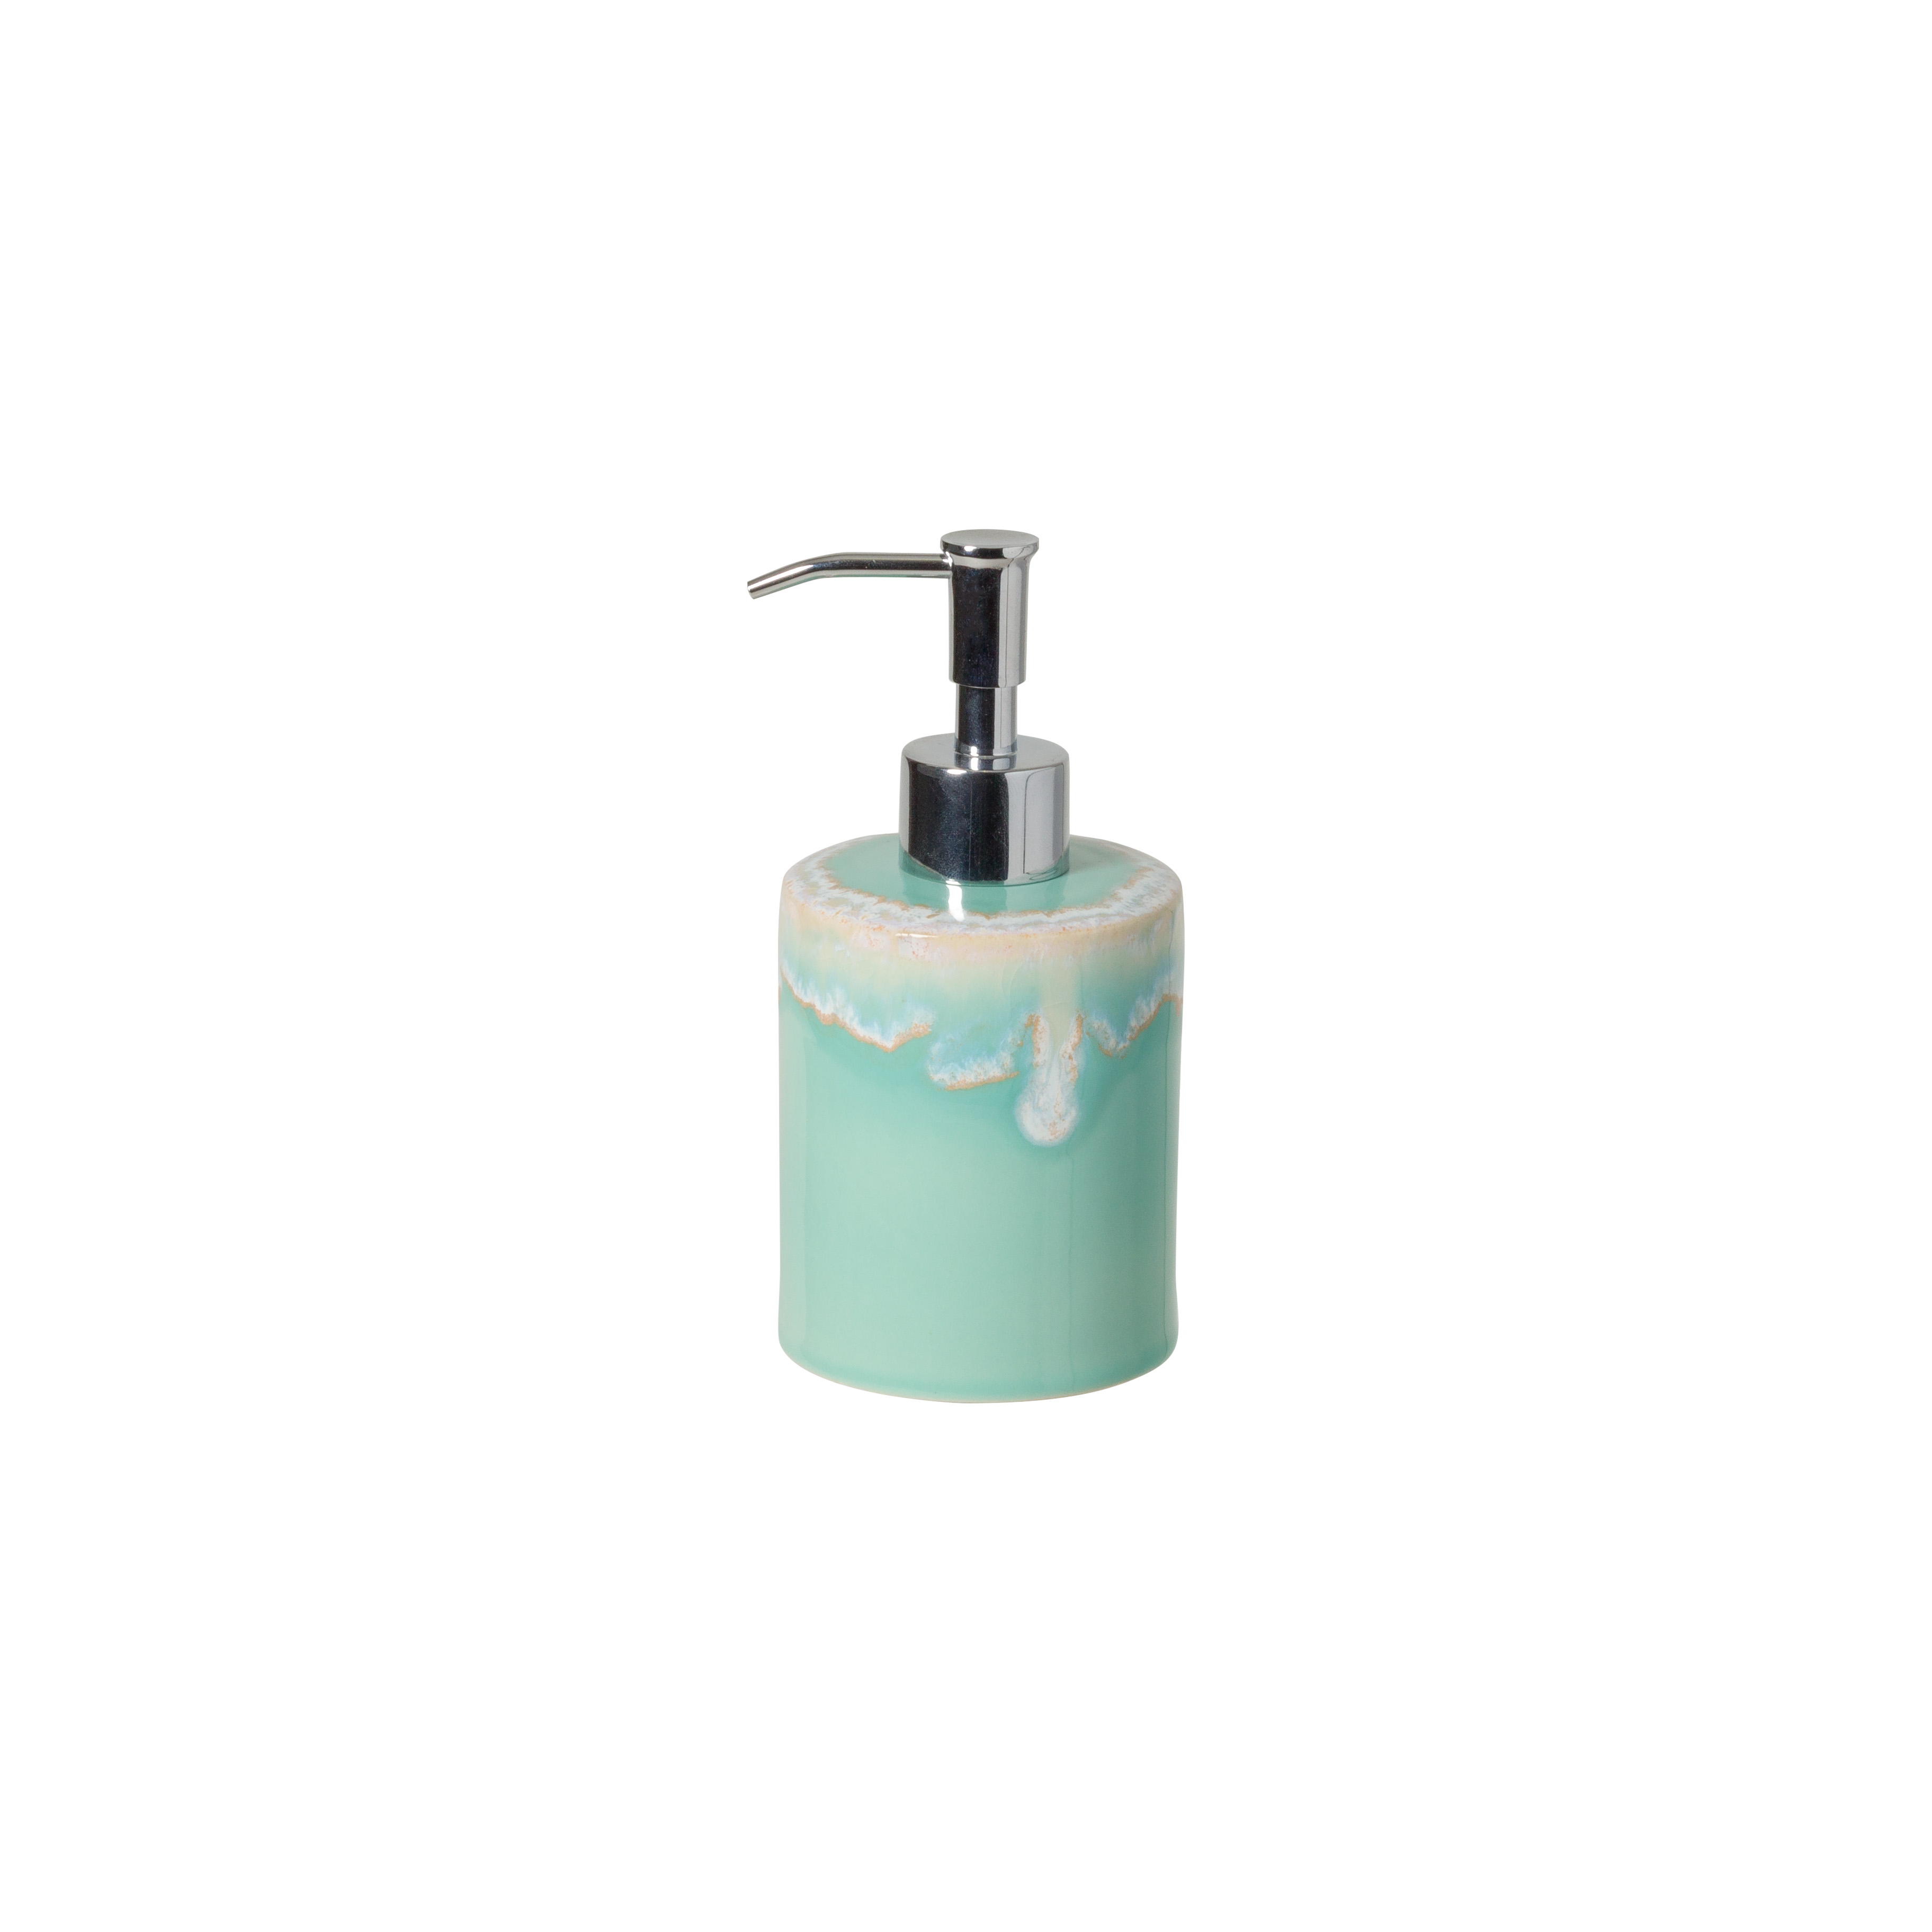 Taormina Bath Aqua Lotion Pump Gift